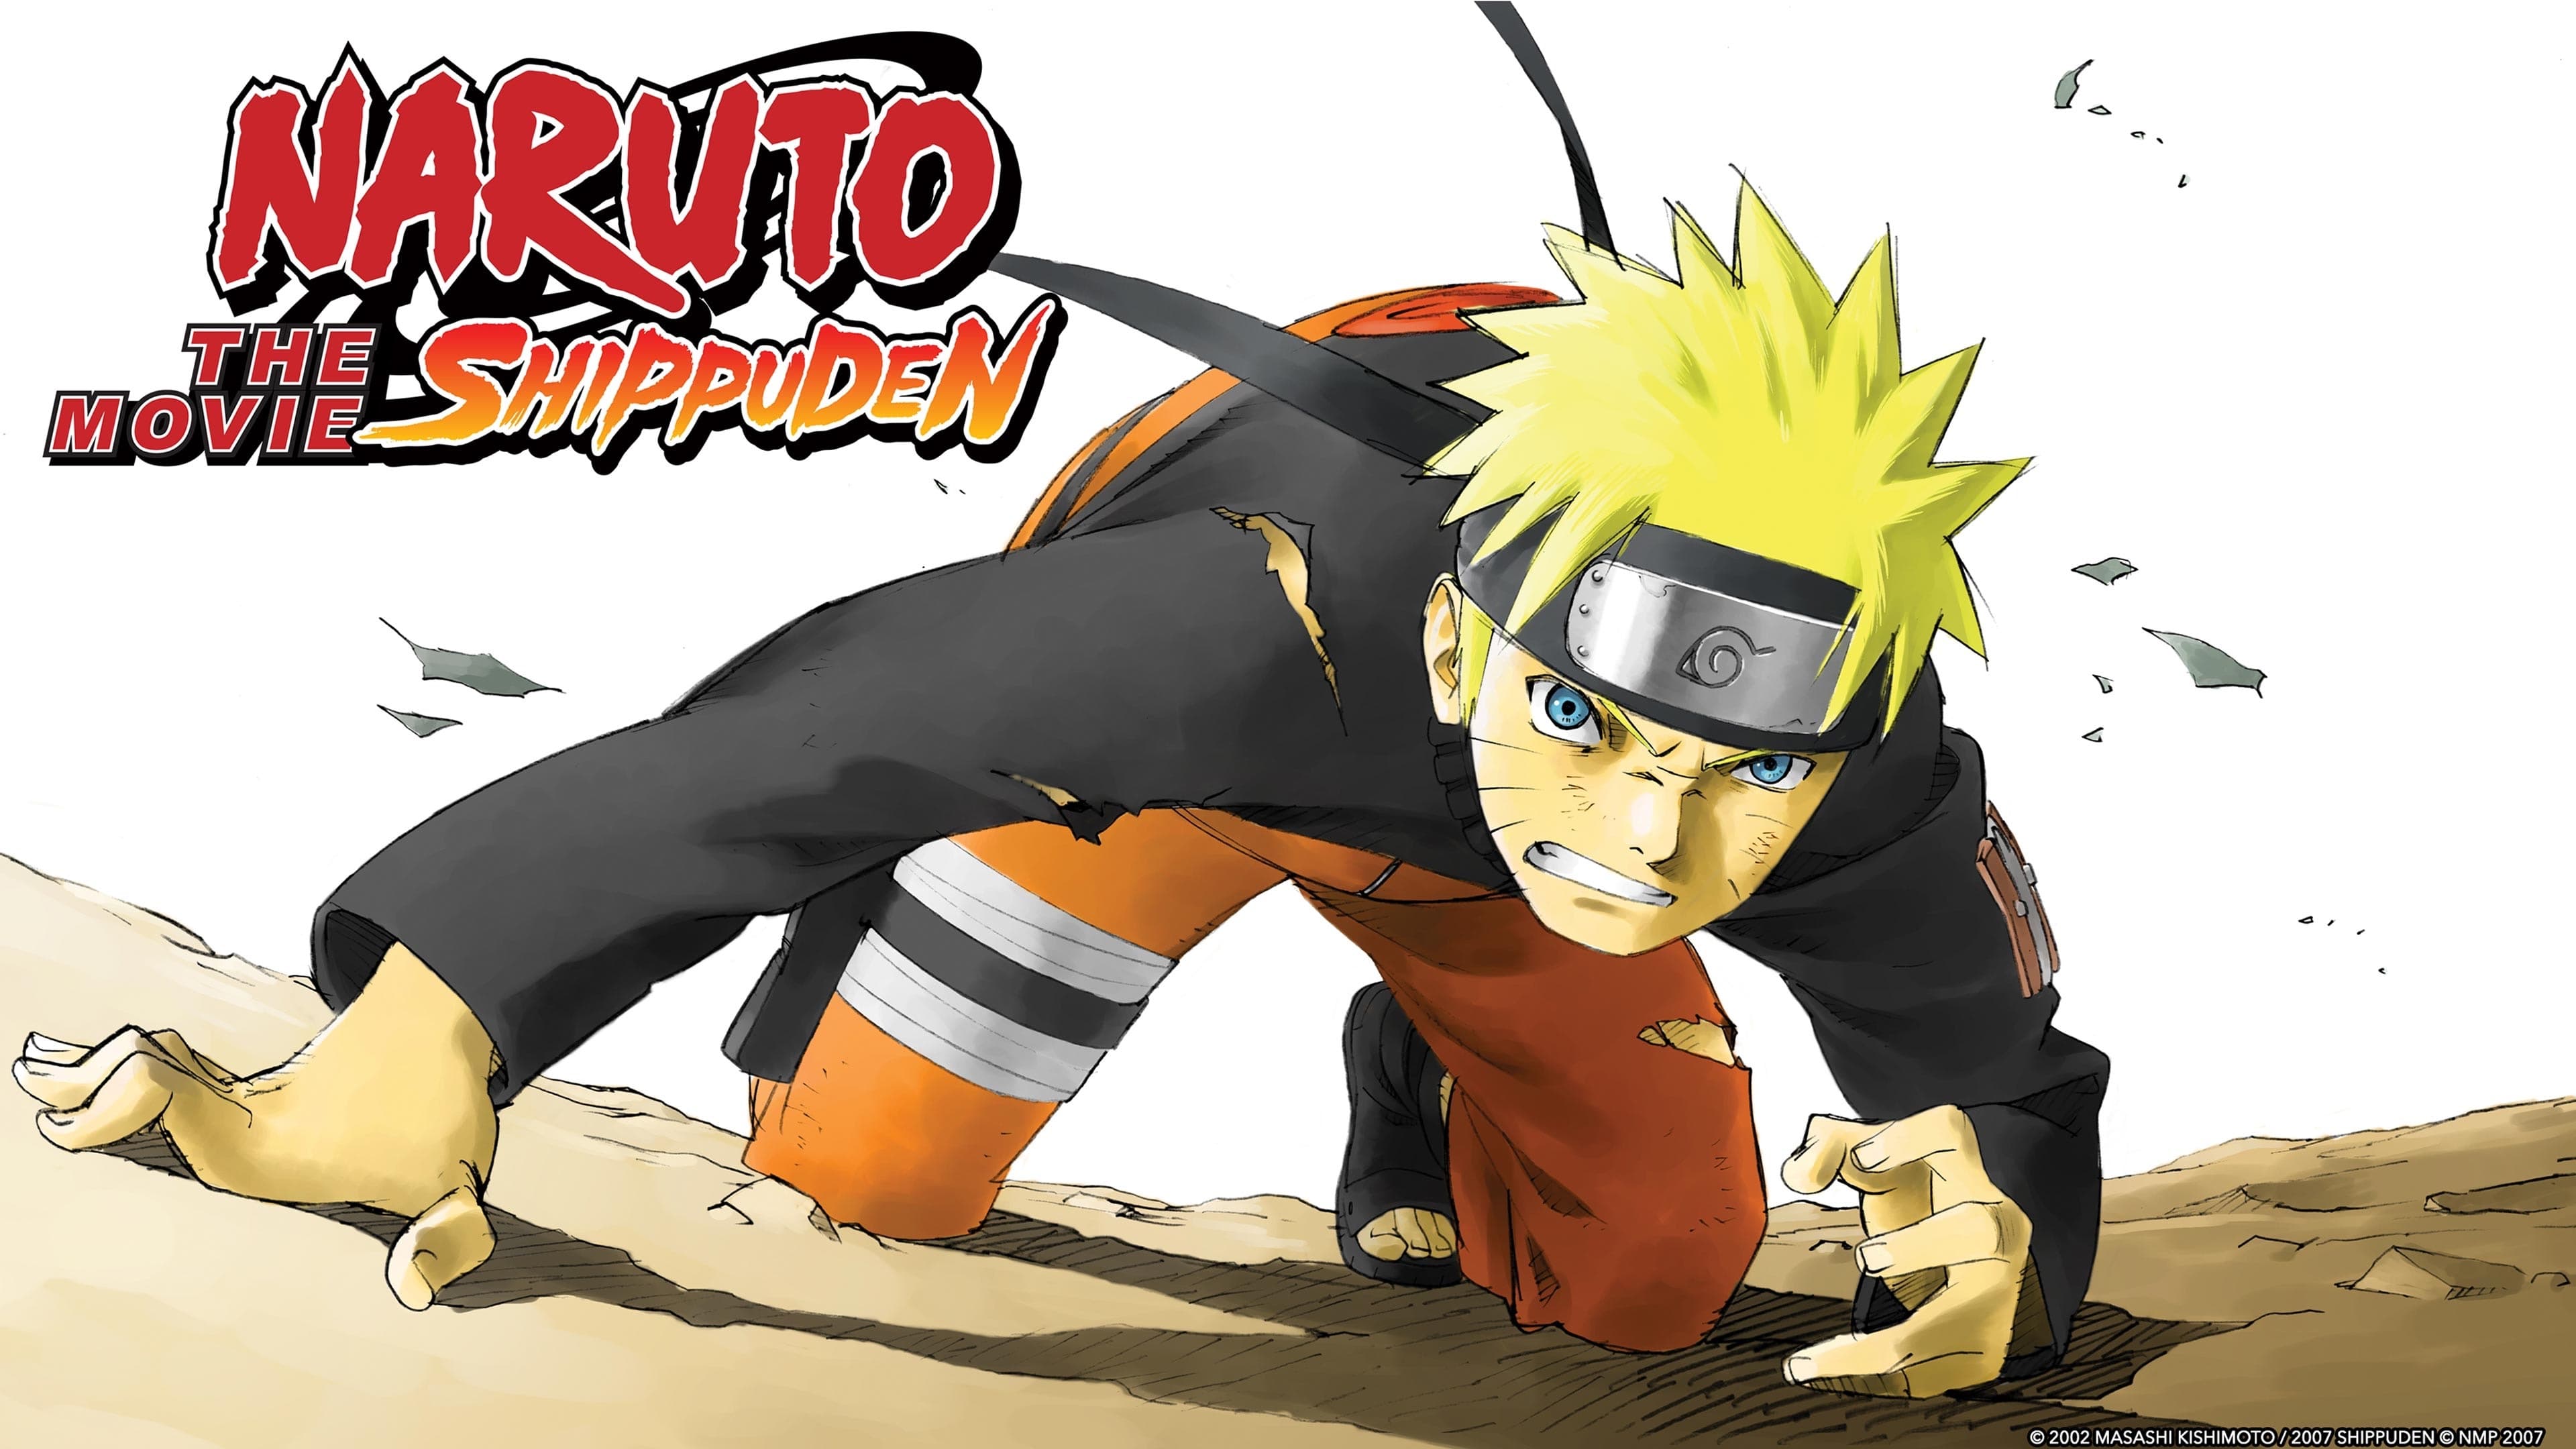 Naruto Shippuden 1: La Muerte de Naruto